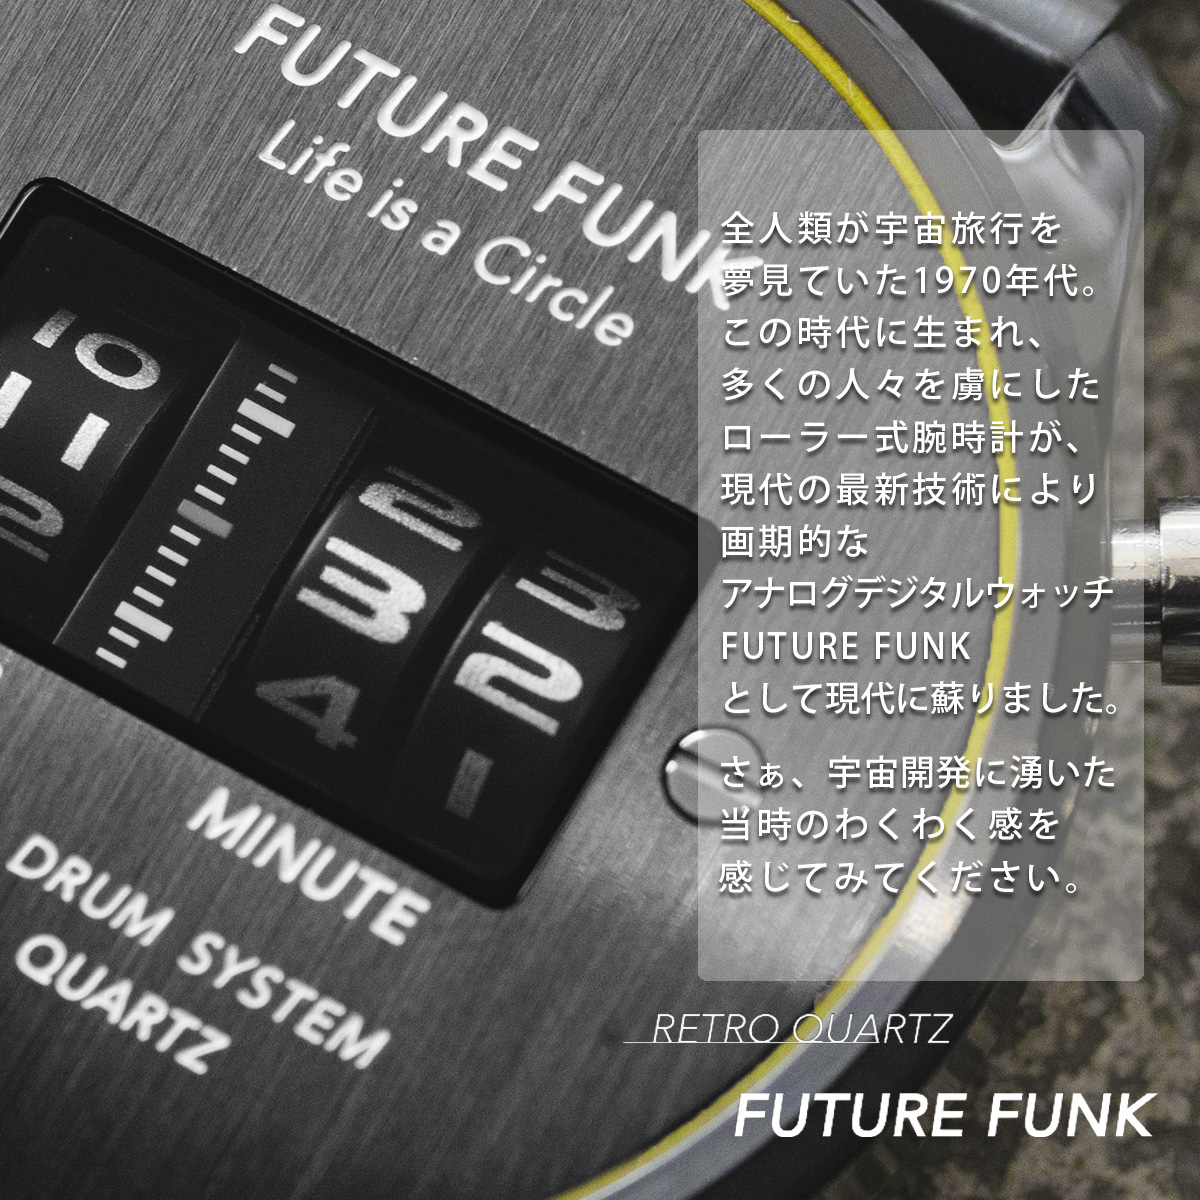 楽天市場 予約販売 10月中旬頃発送予定 Future Funk フューチャーファンク Ff102 Bkyl Mt クオーツ腕時計 メンズ ブラック アナログ デジタル ウォッチ メタルバンド ギフト プレゼント Sputnicks スプートニクス